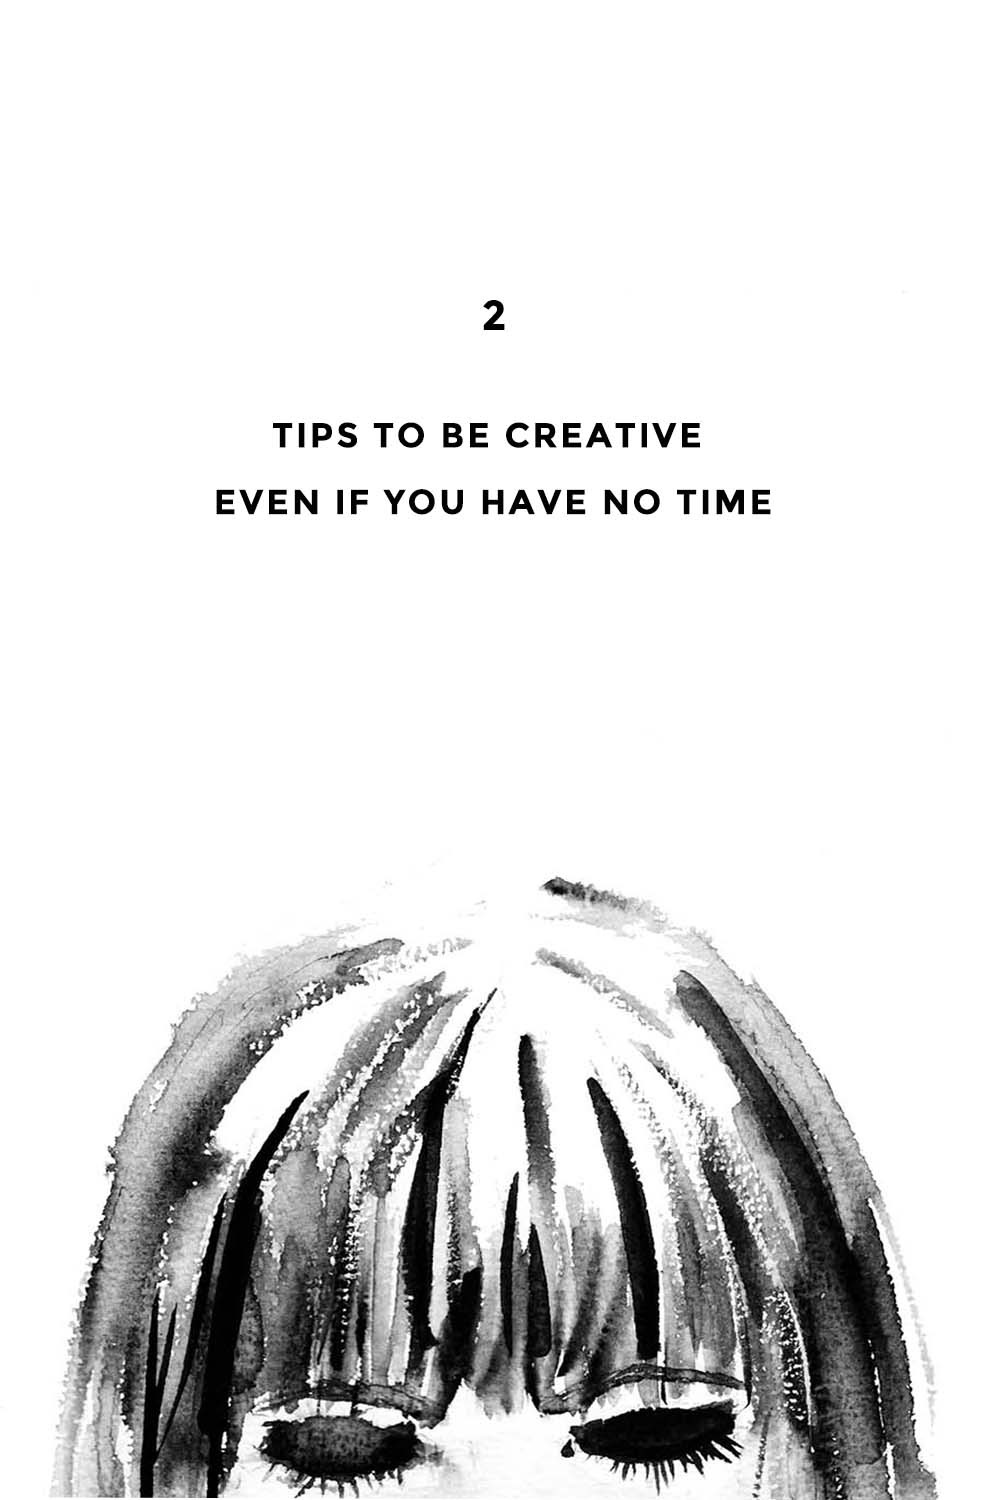 Trotz Zeitmangel kreativ sein ? 2 Tipps wie das möglich wird